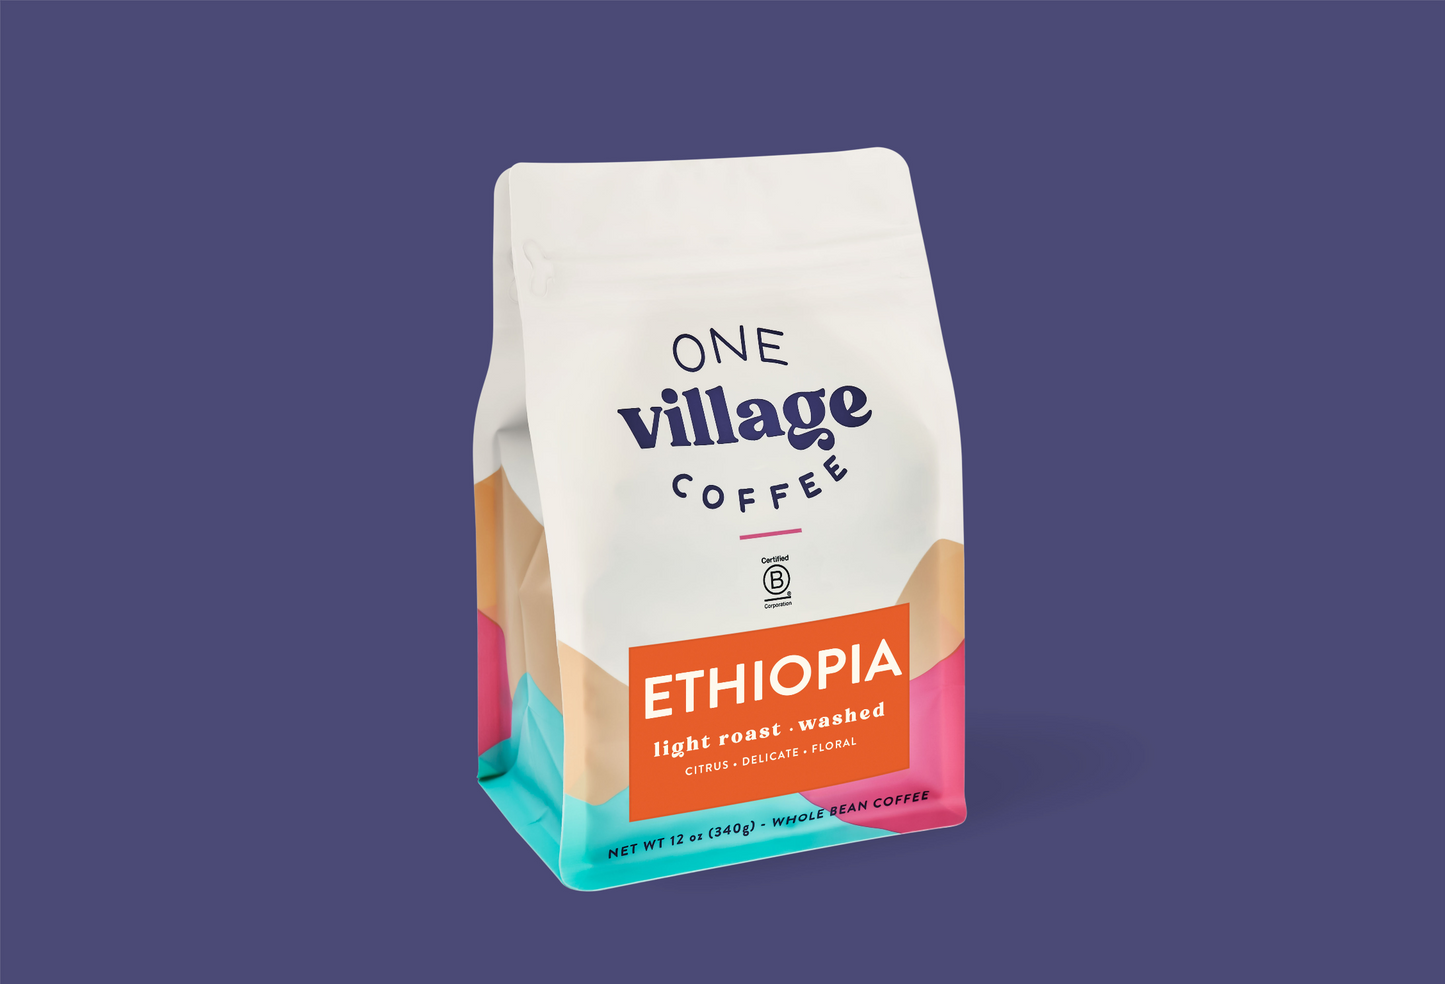 Image of Ethiopia Washed coffee bag.